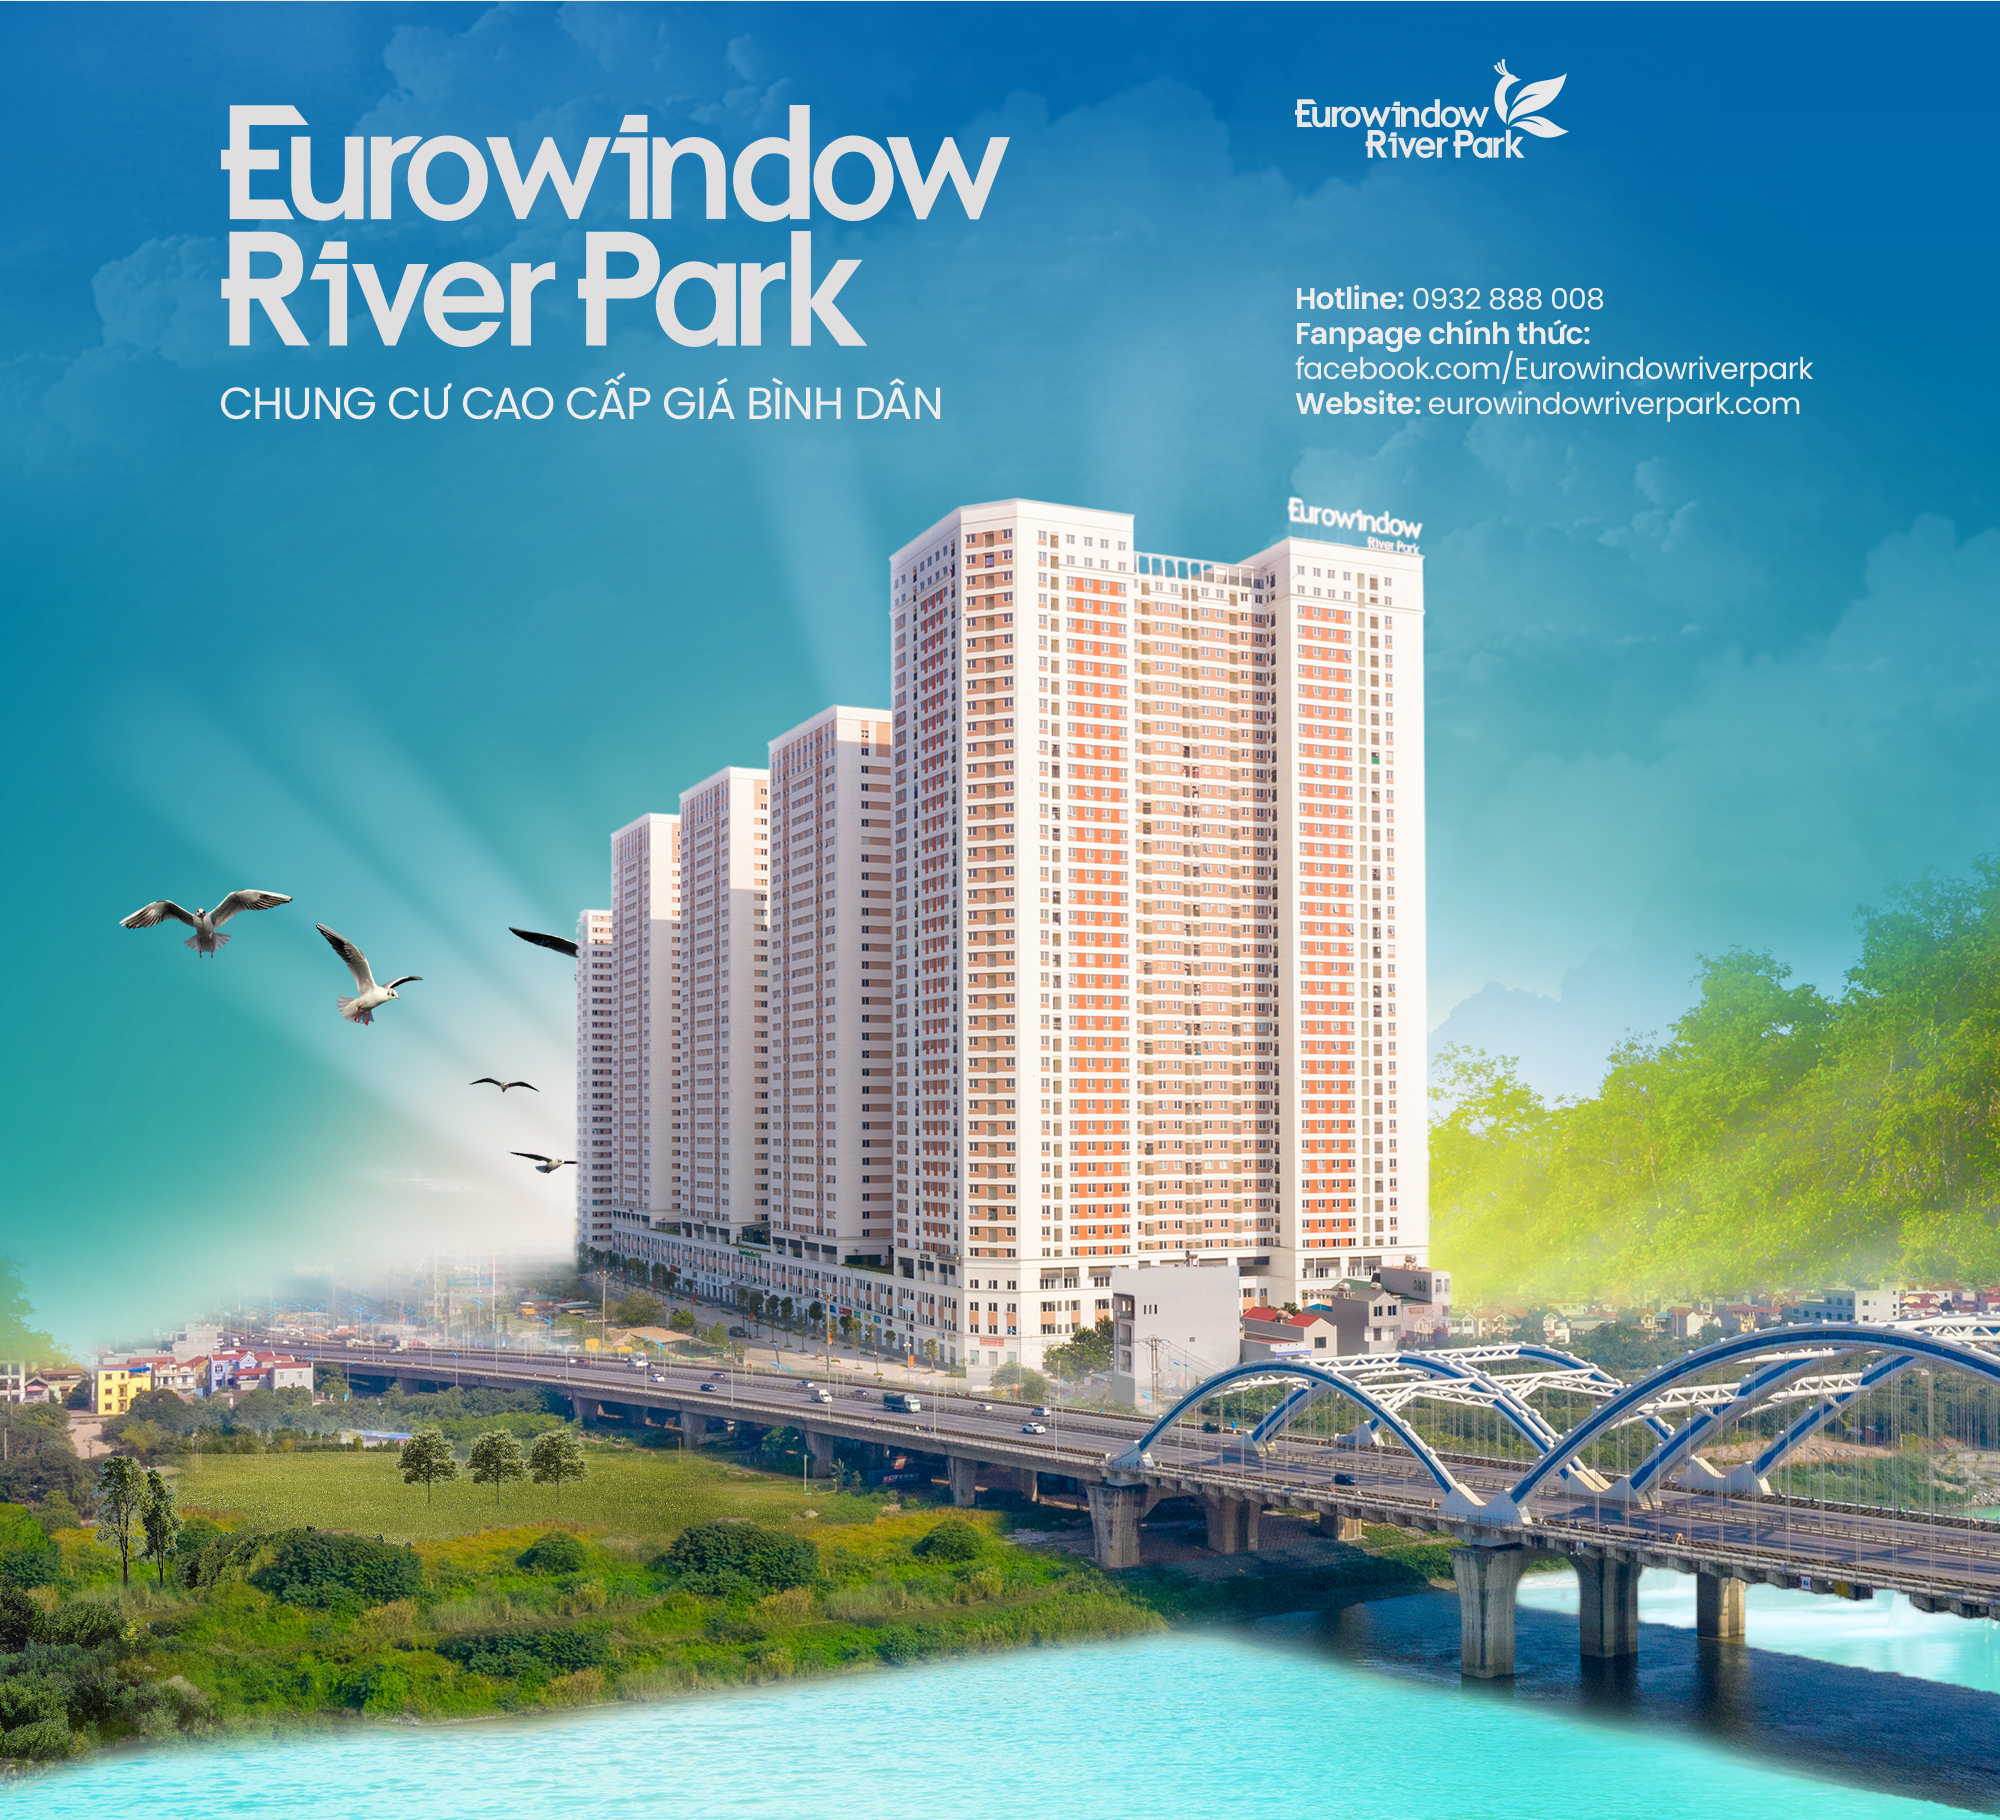 6 yếu tố làm nên chốn an cư lý tưởng Eurowindow River Park - Ảnh 13.